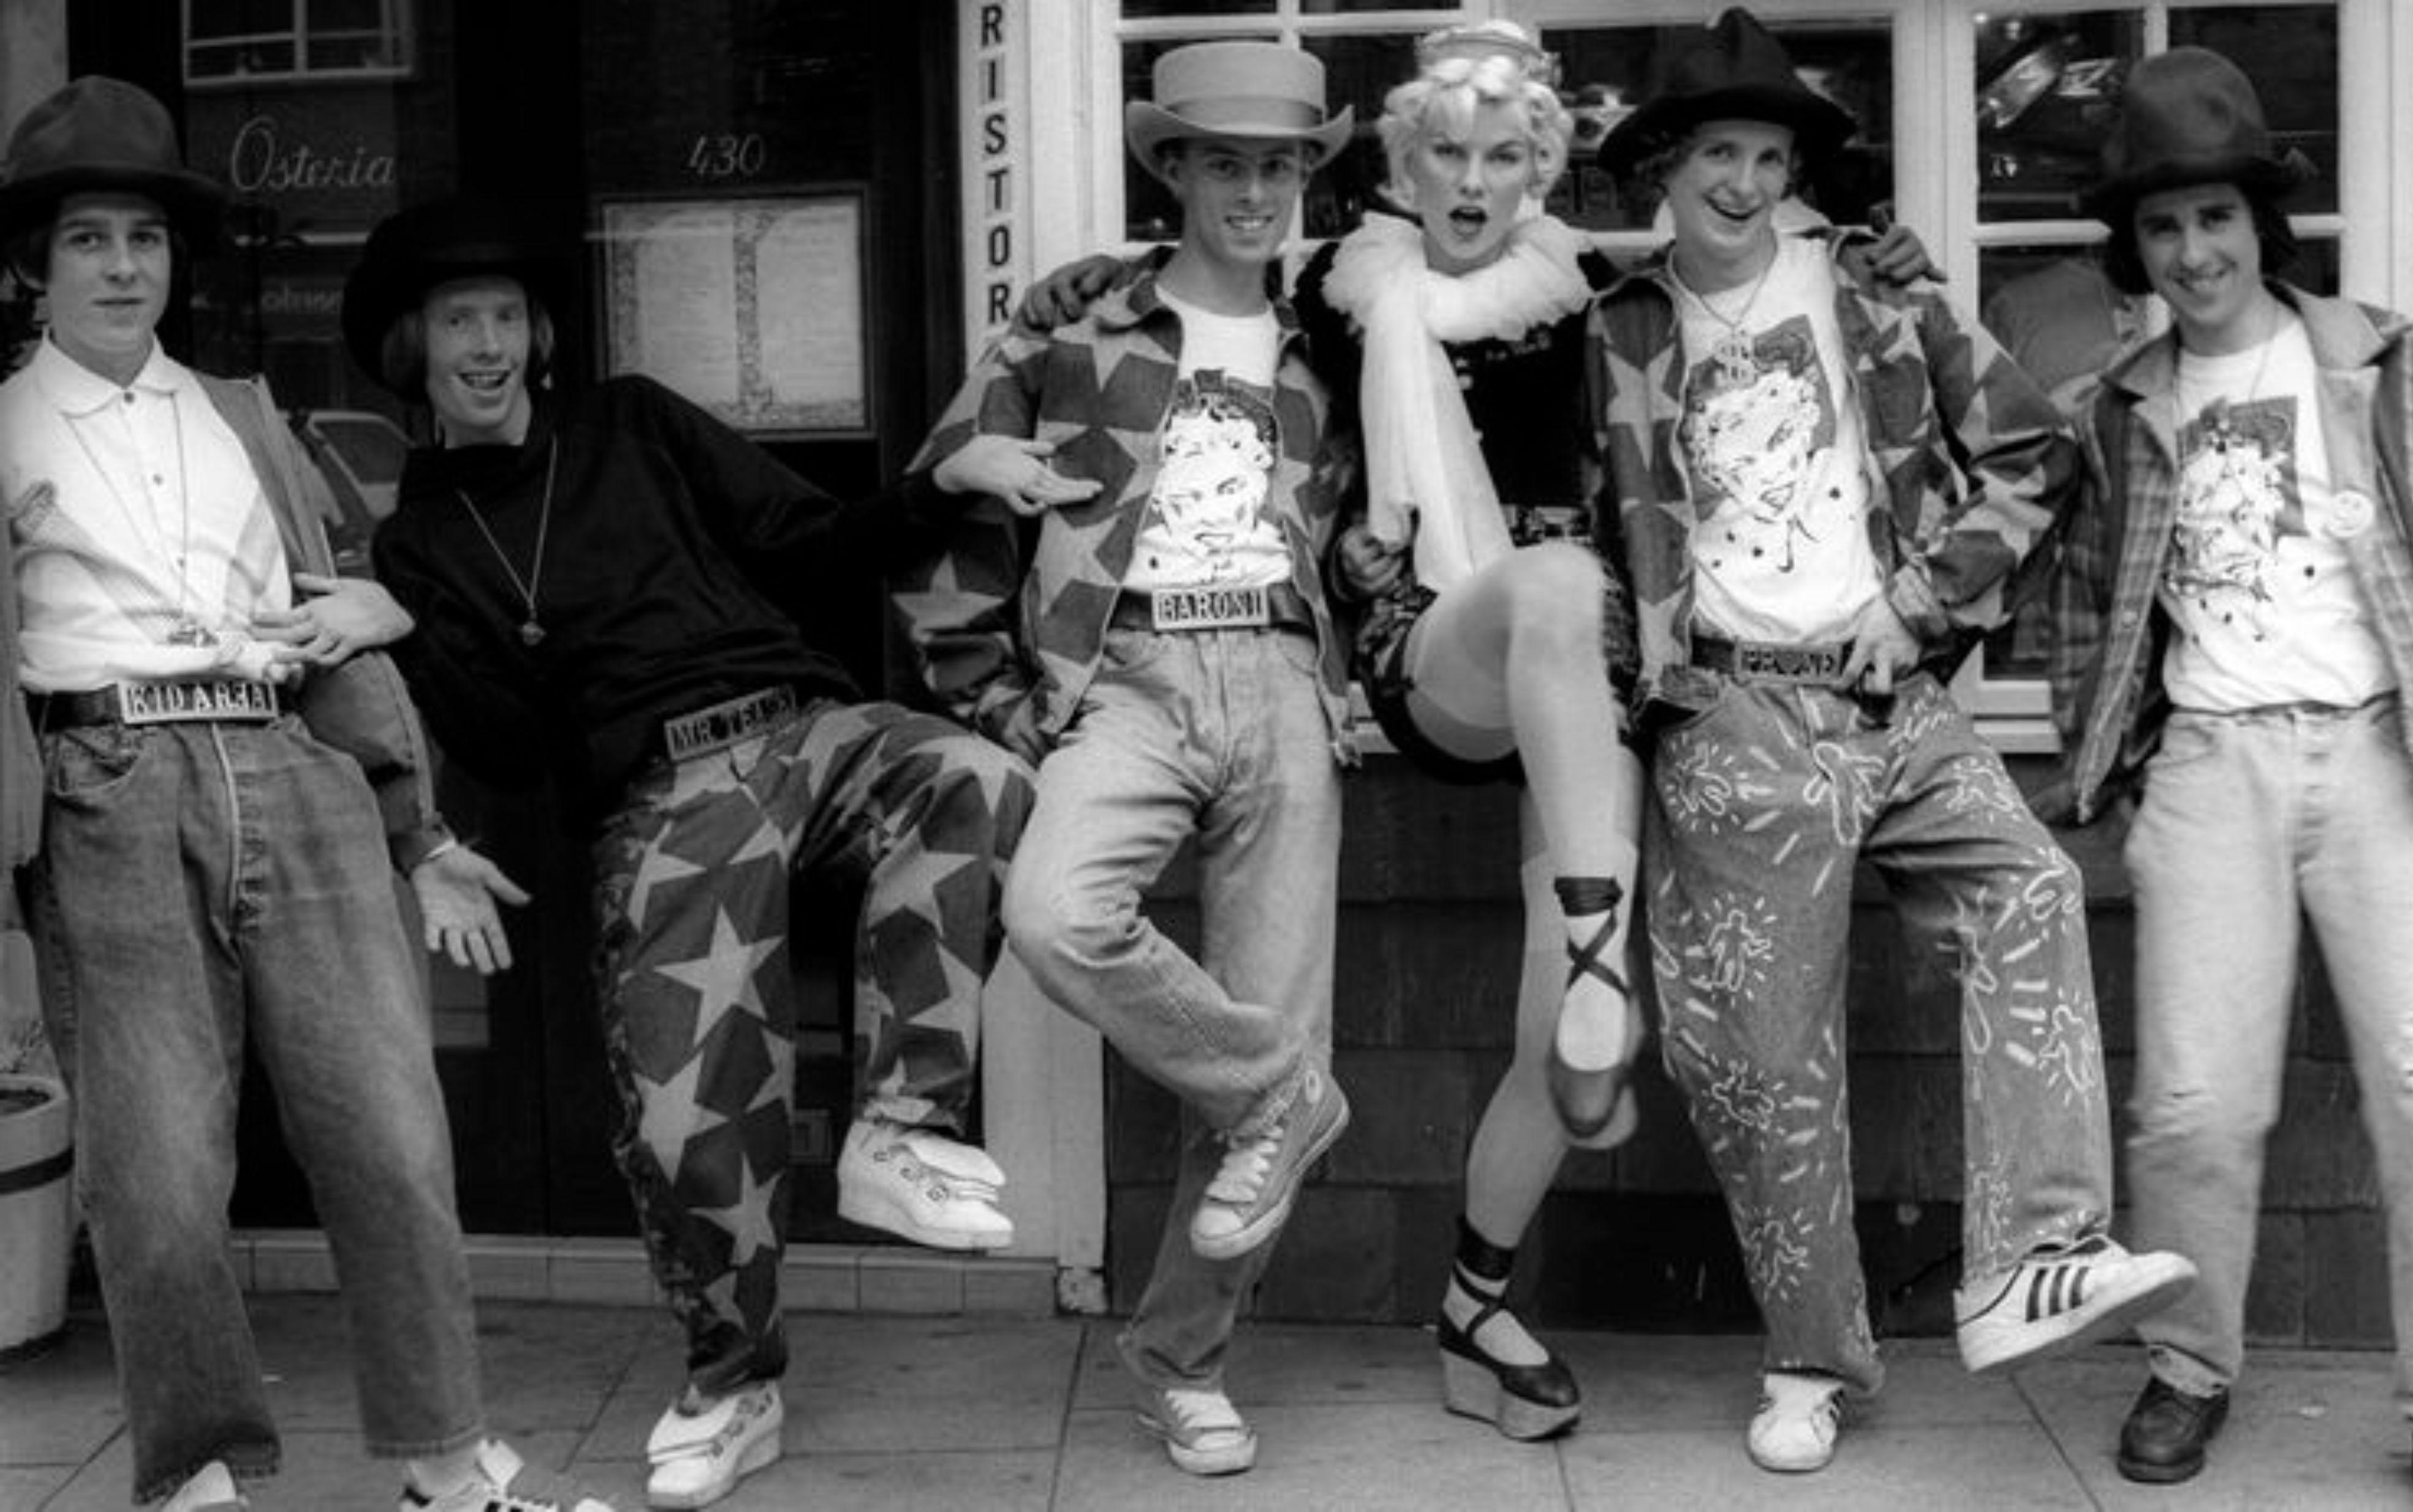 Vintage Vivienne Westwood
Spring 1986 